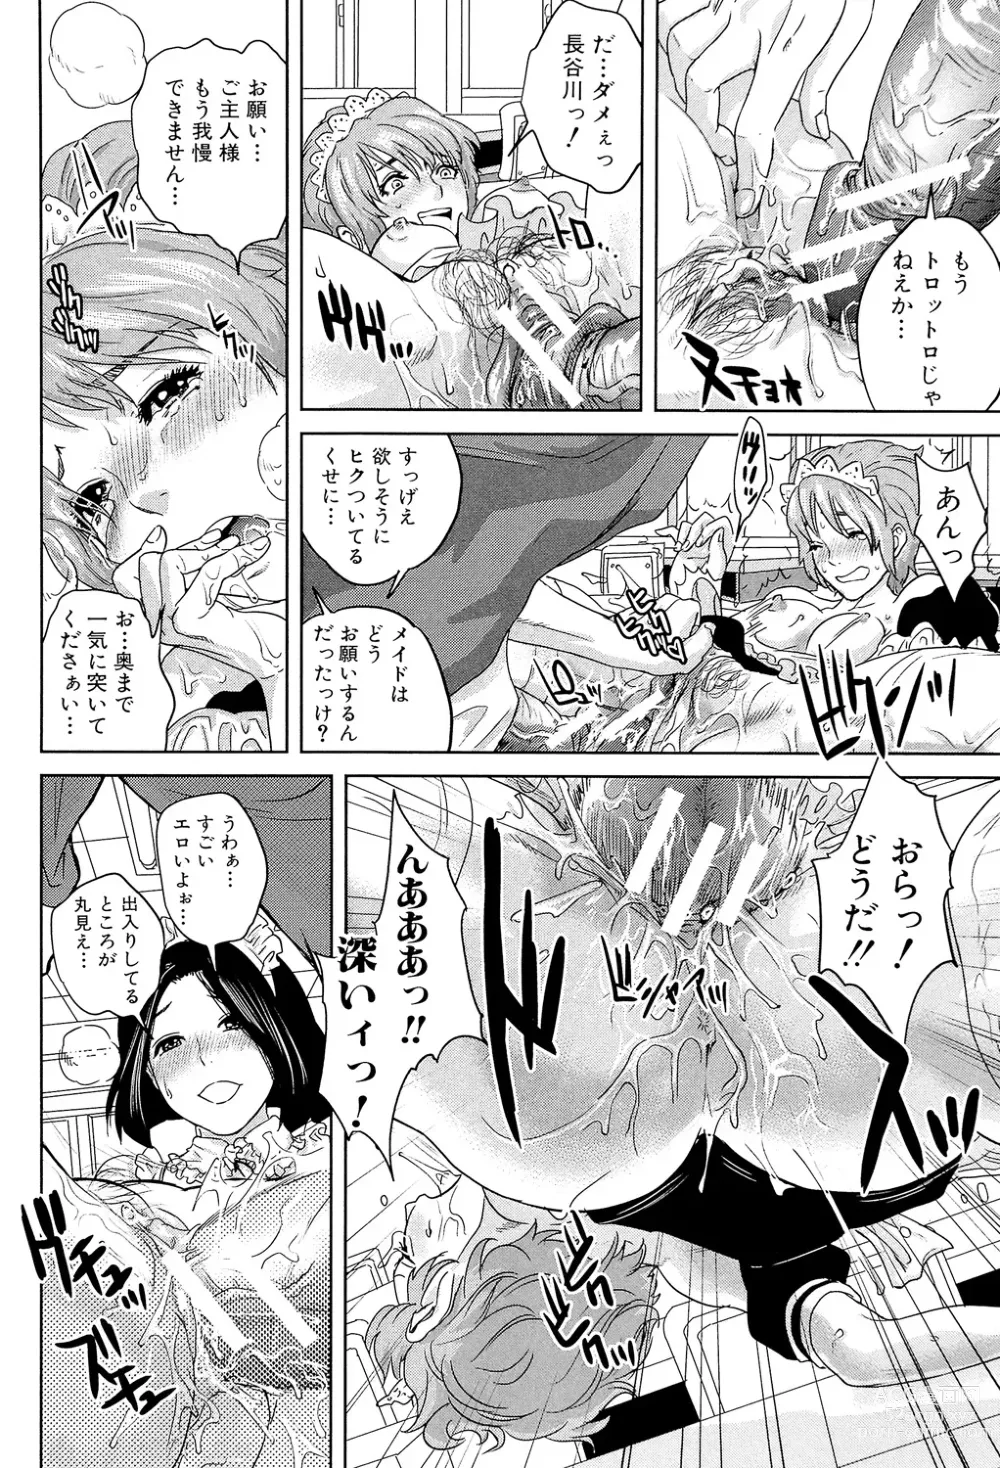 Page 200 of manga Boku-tachi no Kinki